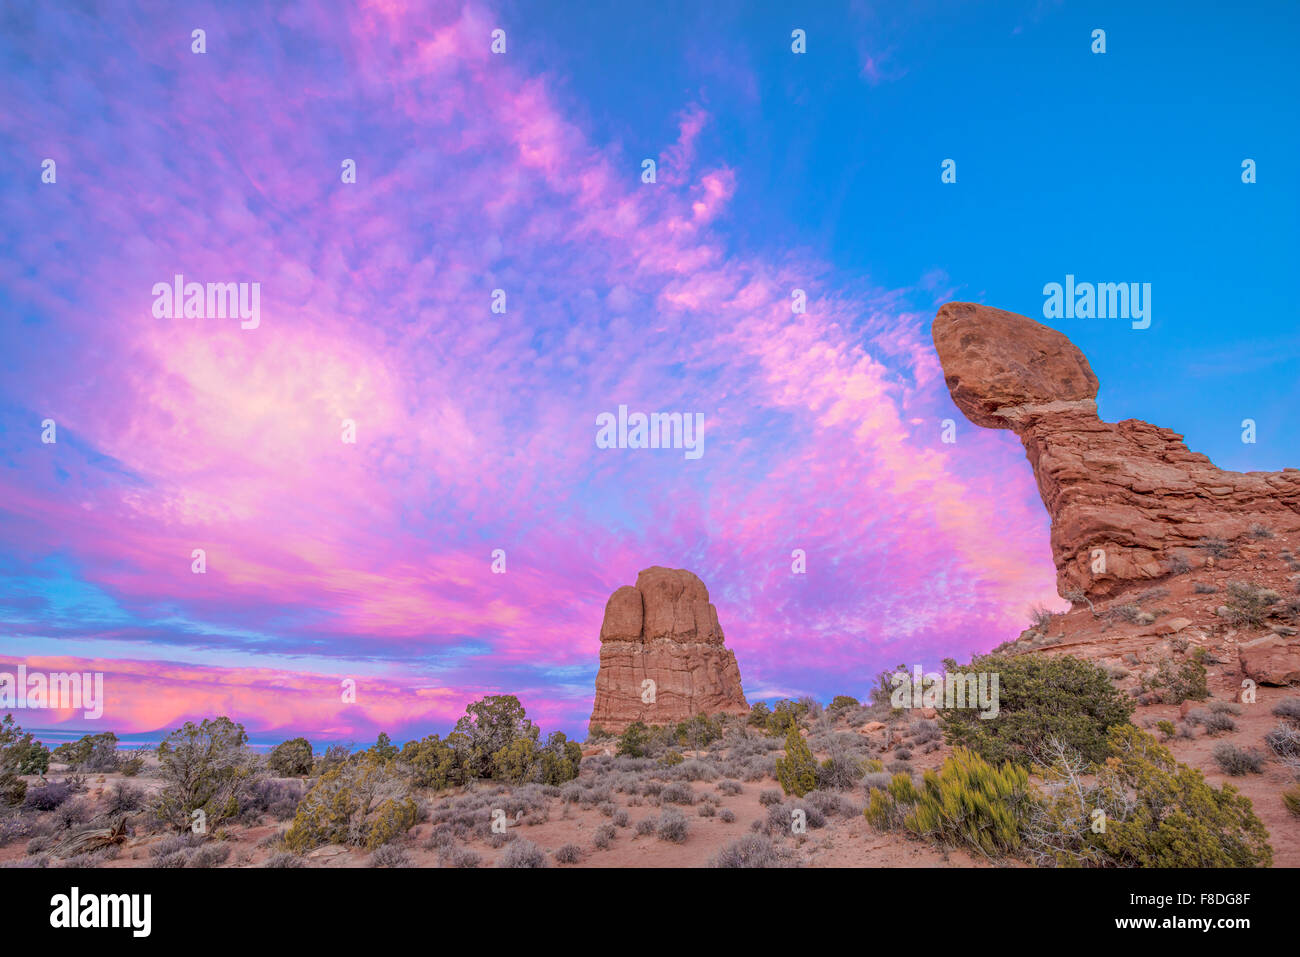 Balanced Rock und sunset Wolken, Arches-Nationalpark, Utah Entrada Sandstein Wolken, Arches-Nationalpark, Utah Entrada Sandstø Stockfoto